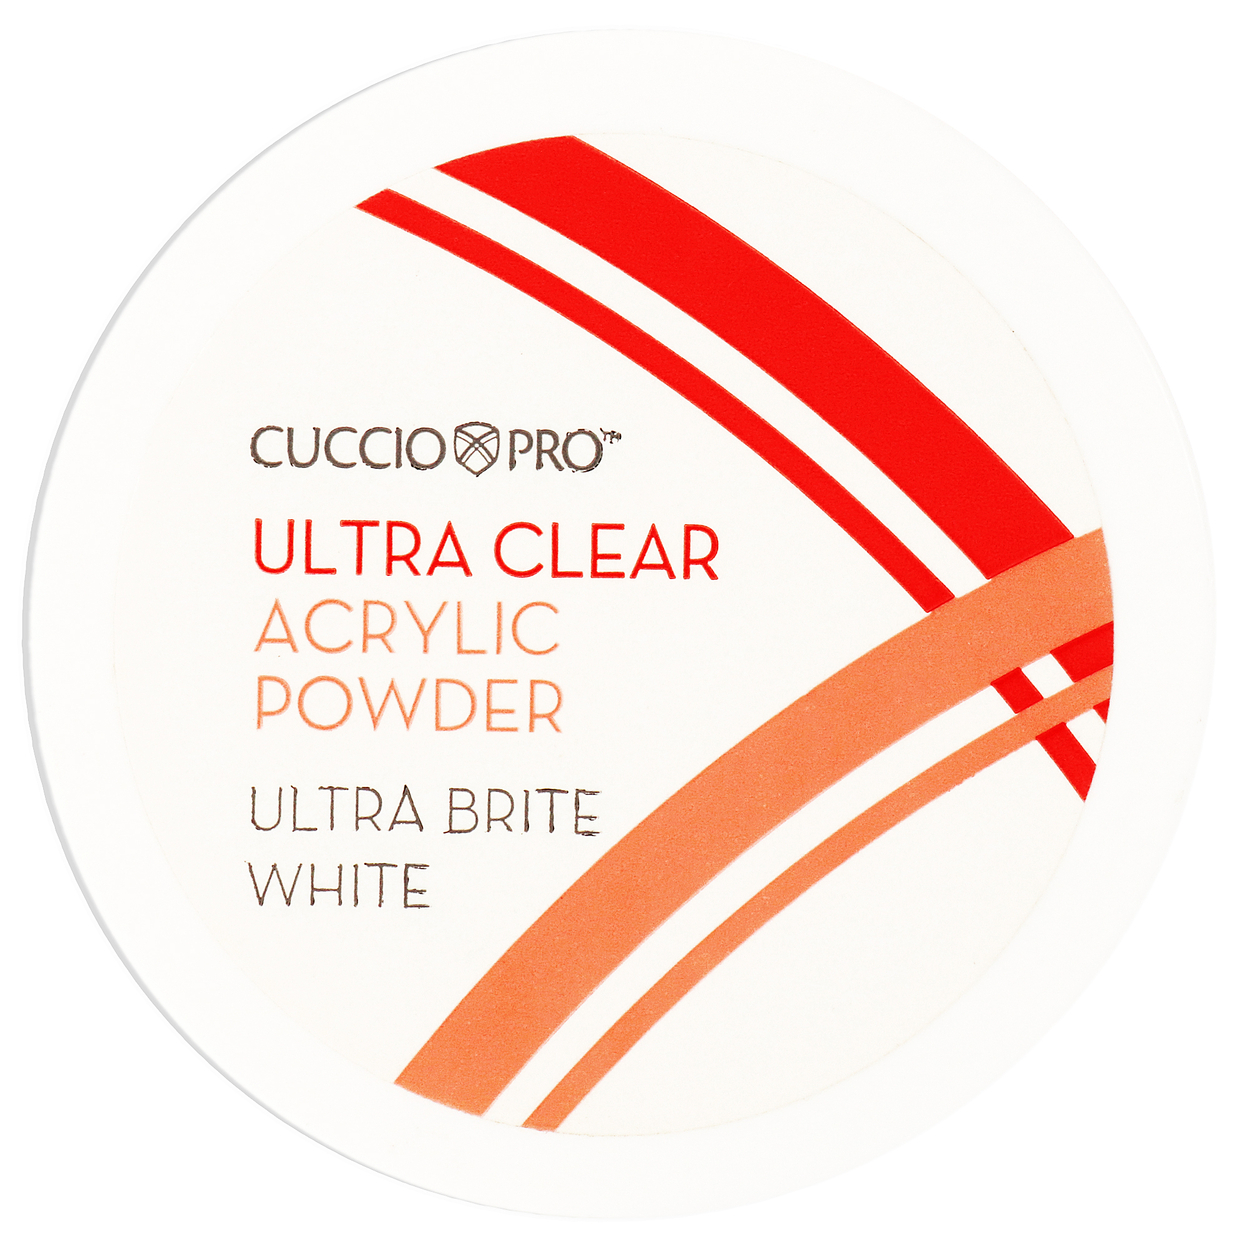 Cuccio Pro Ultra Clear Acrylic Powder - Ultra Brite White 1.6 Oz